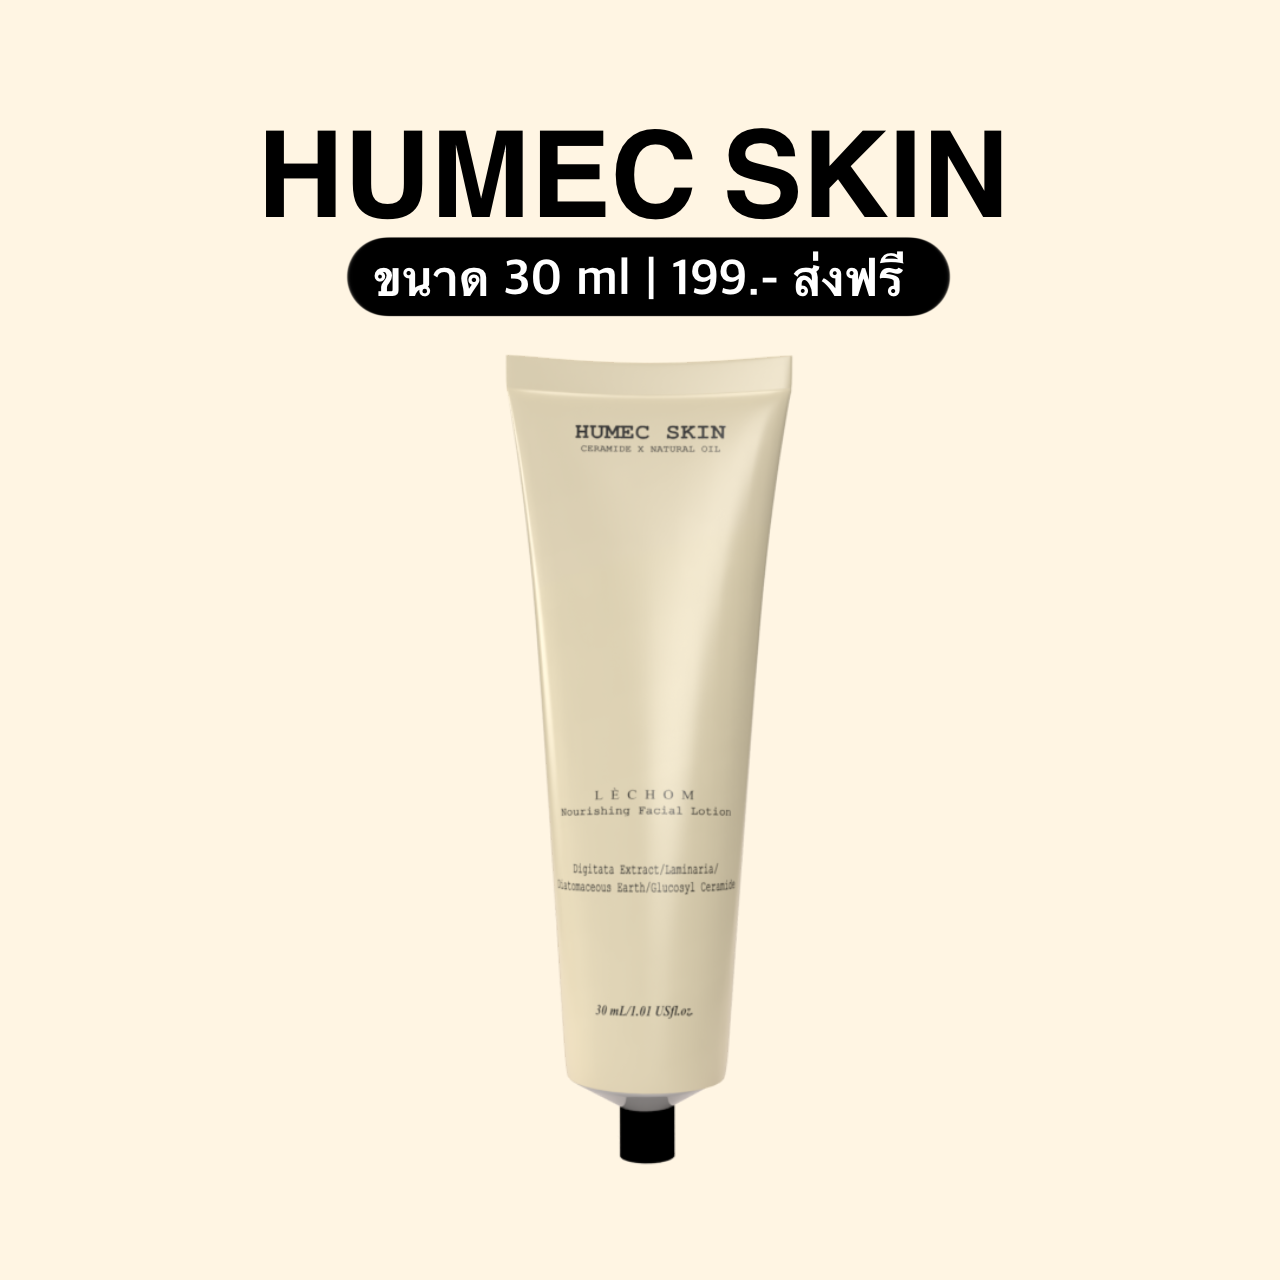 มอยเจอร์ไรเซอร์ Humec skin 30 g. [ ส่งฟรี !! ]